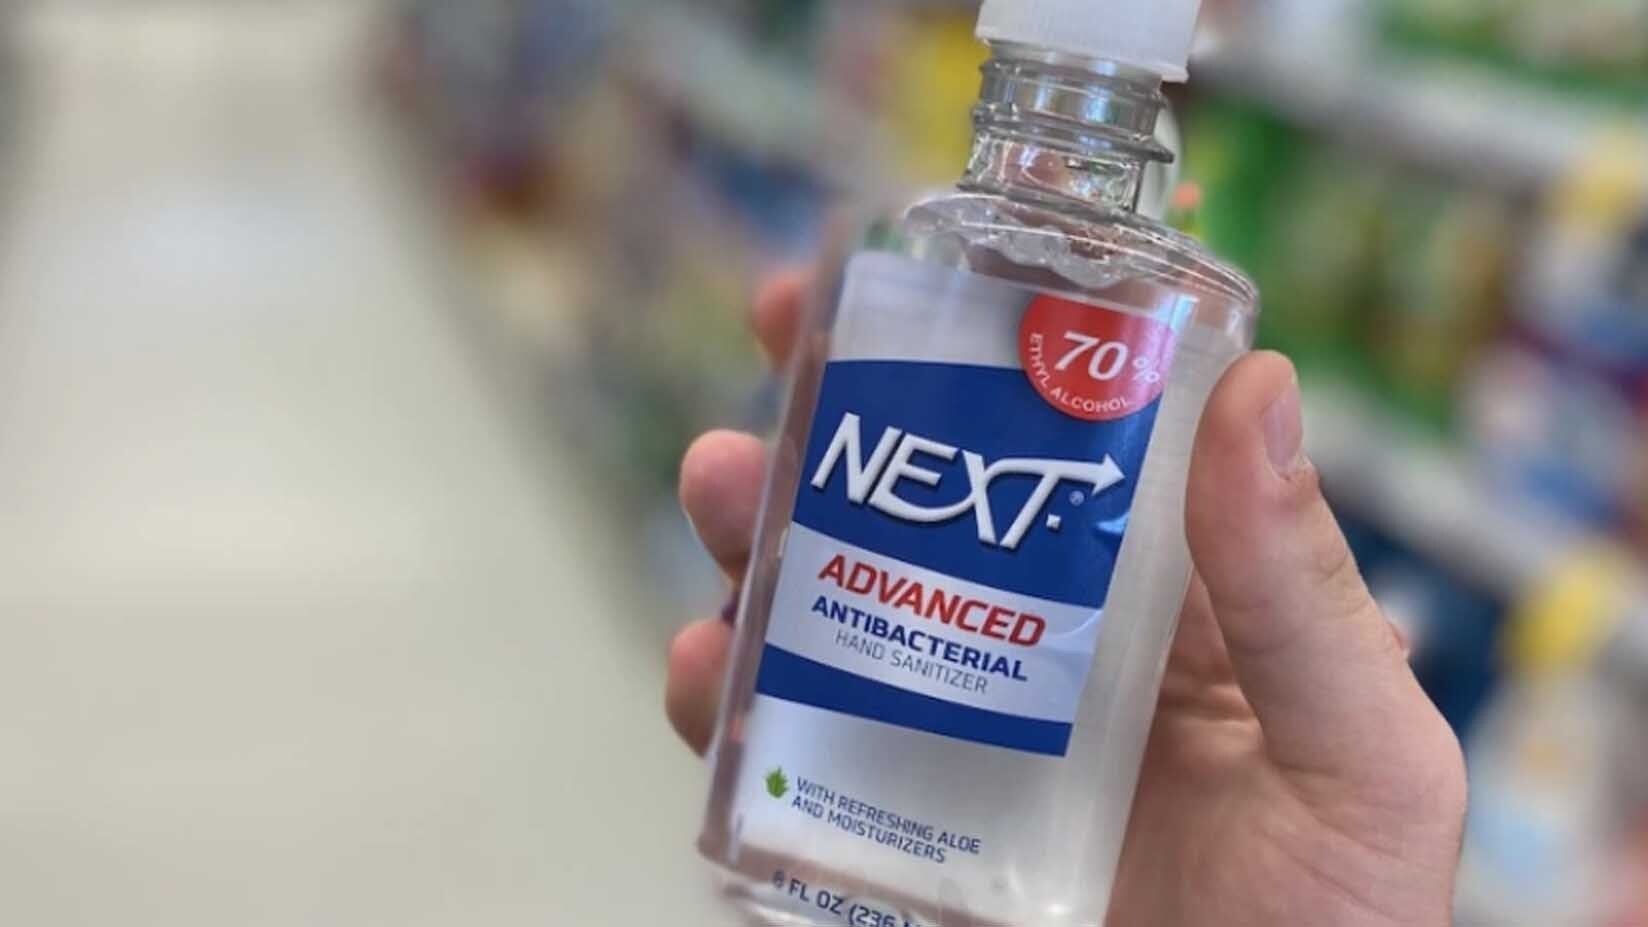 Next hand sanitizer